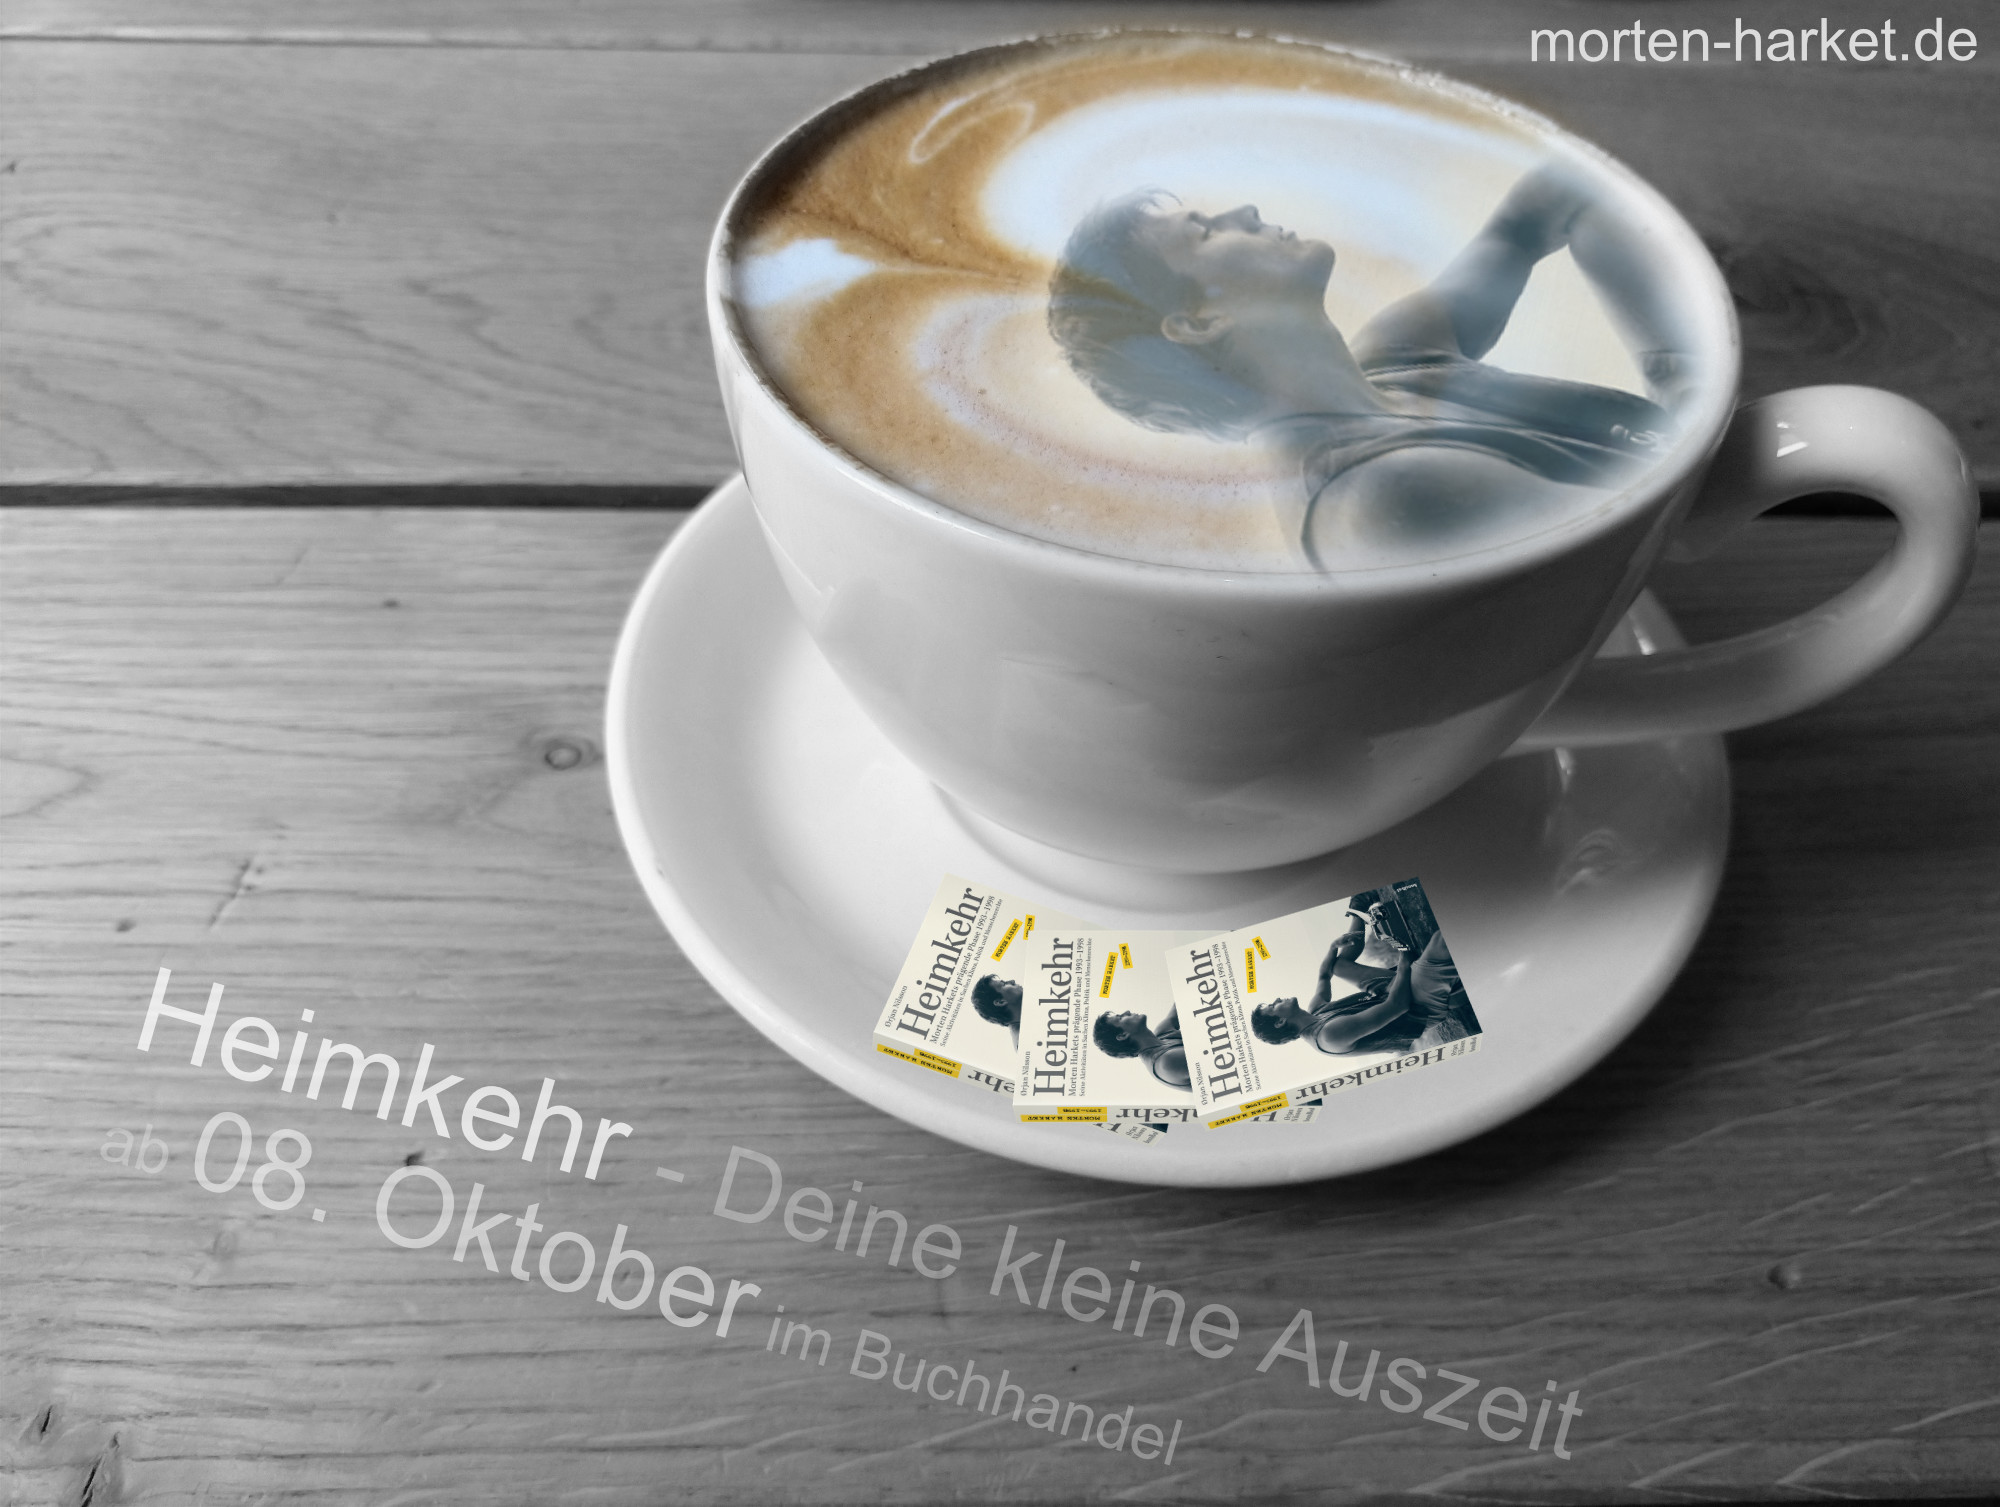 morten_promo_heimkehr_kaffee2_september_2020.jpg